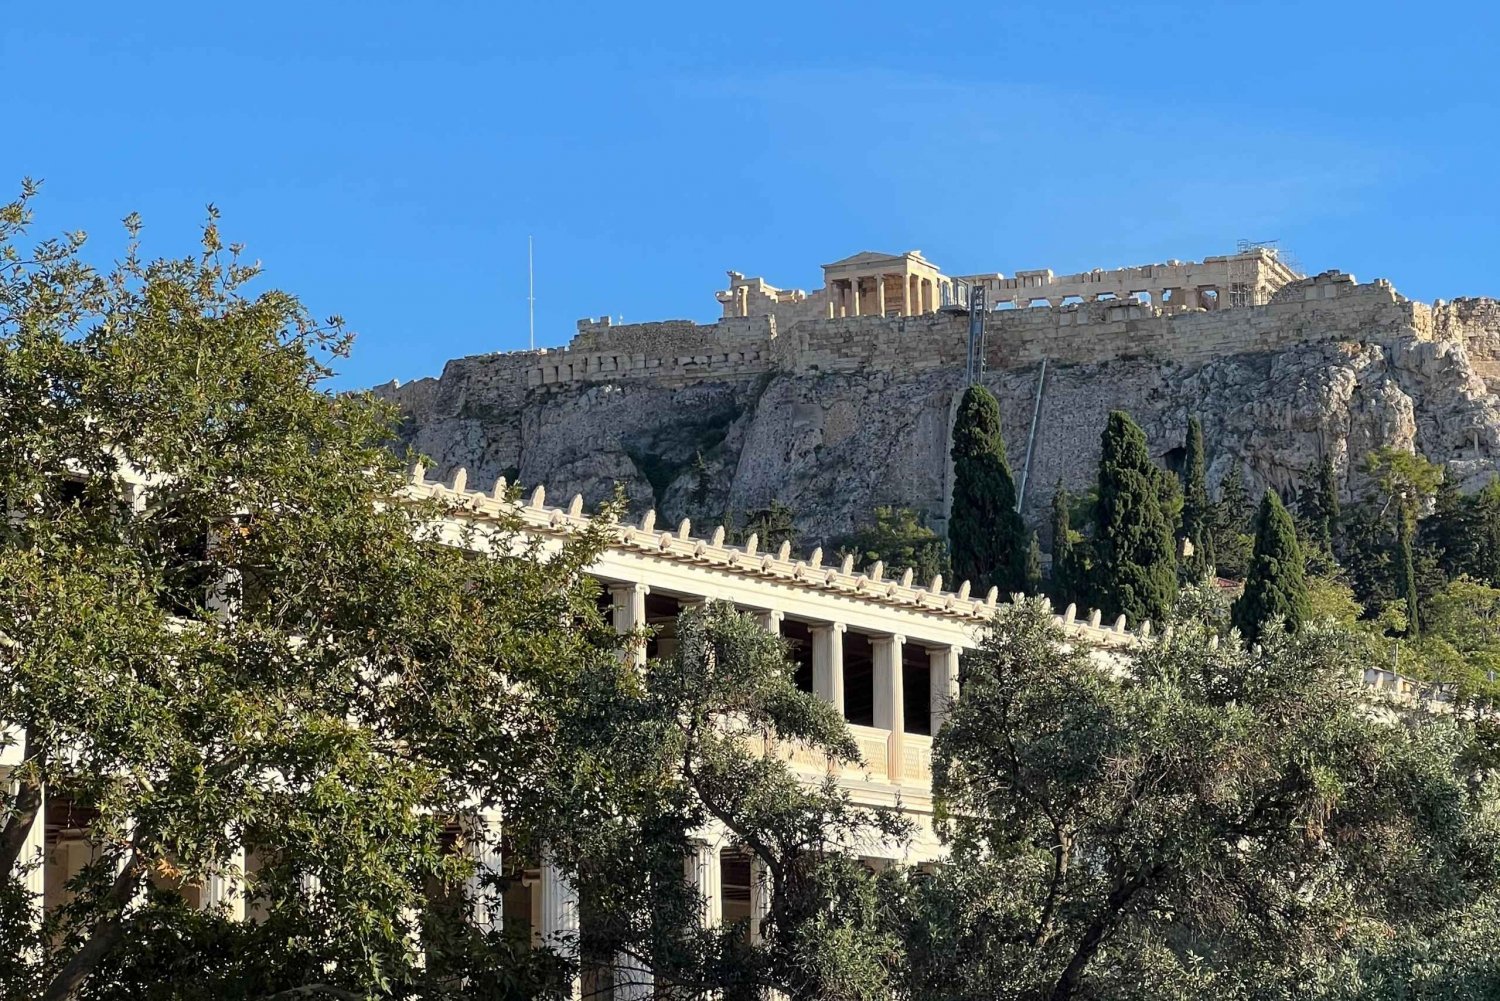 Utrolig vandring i Athen med skjulte perler